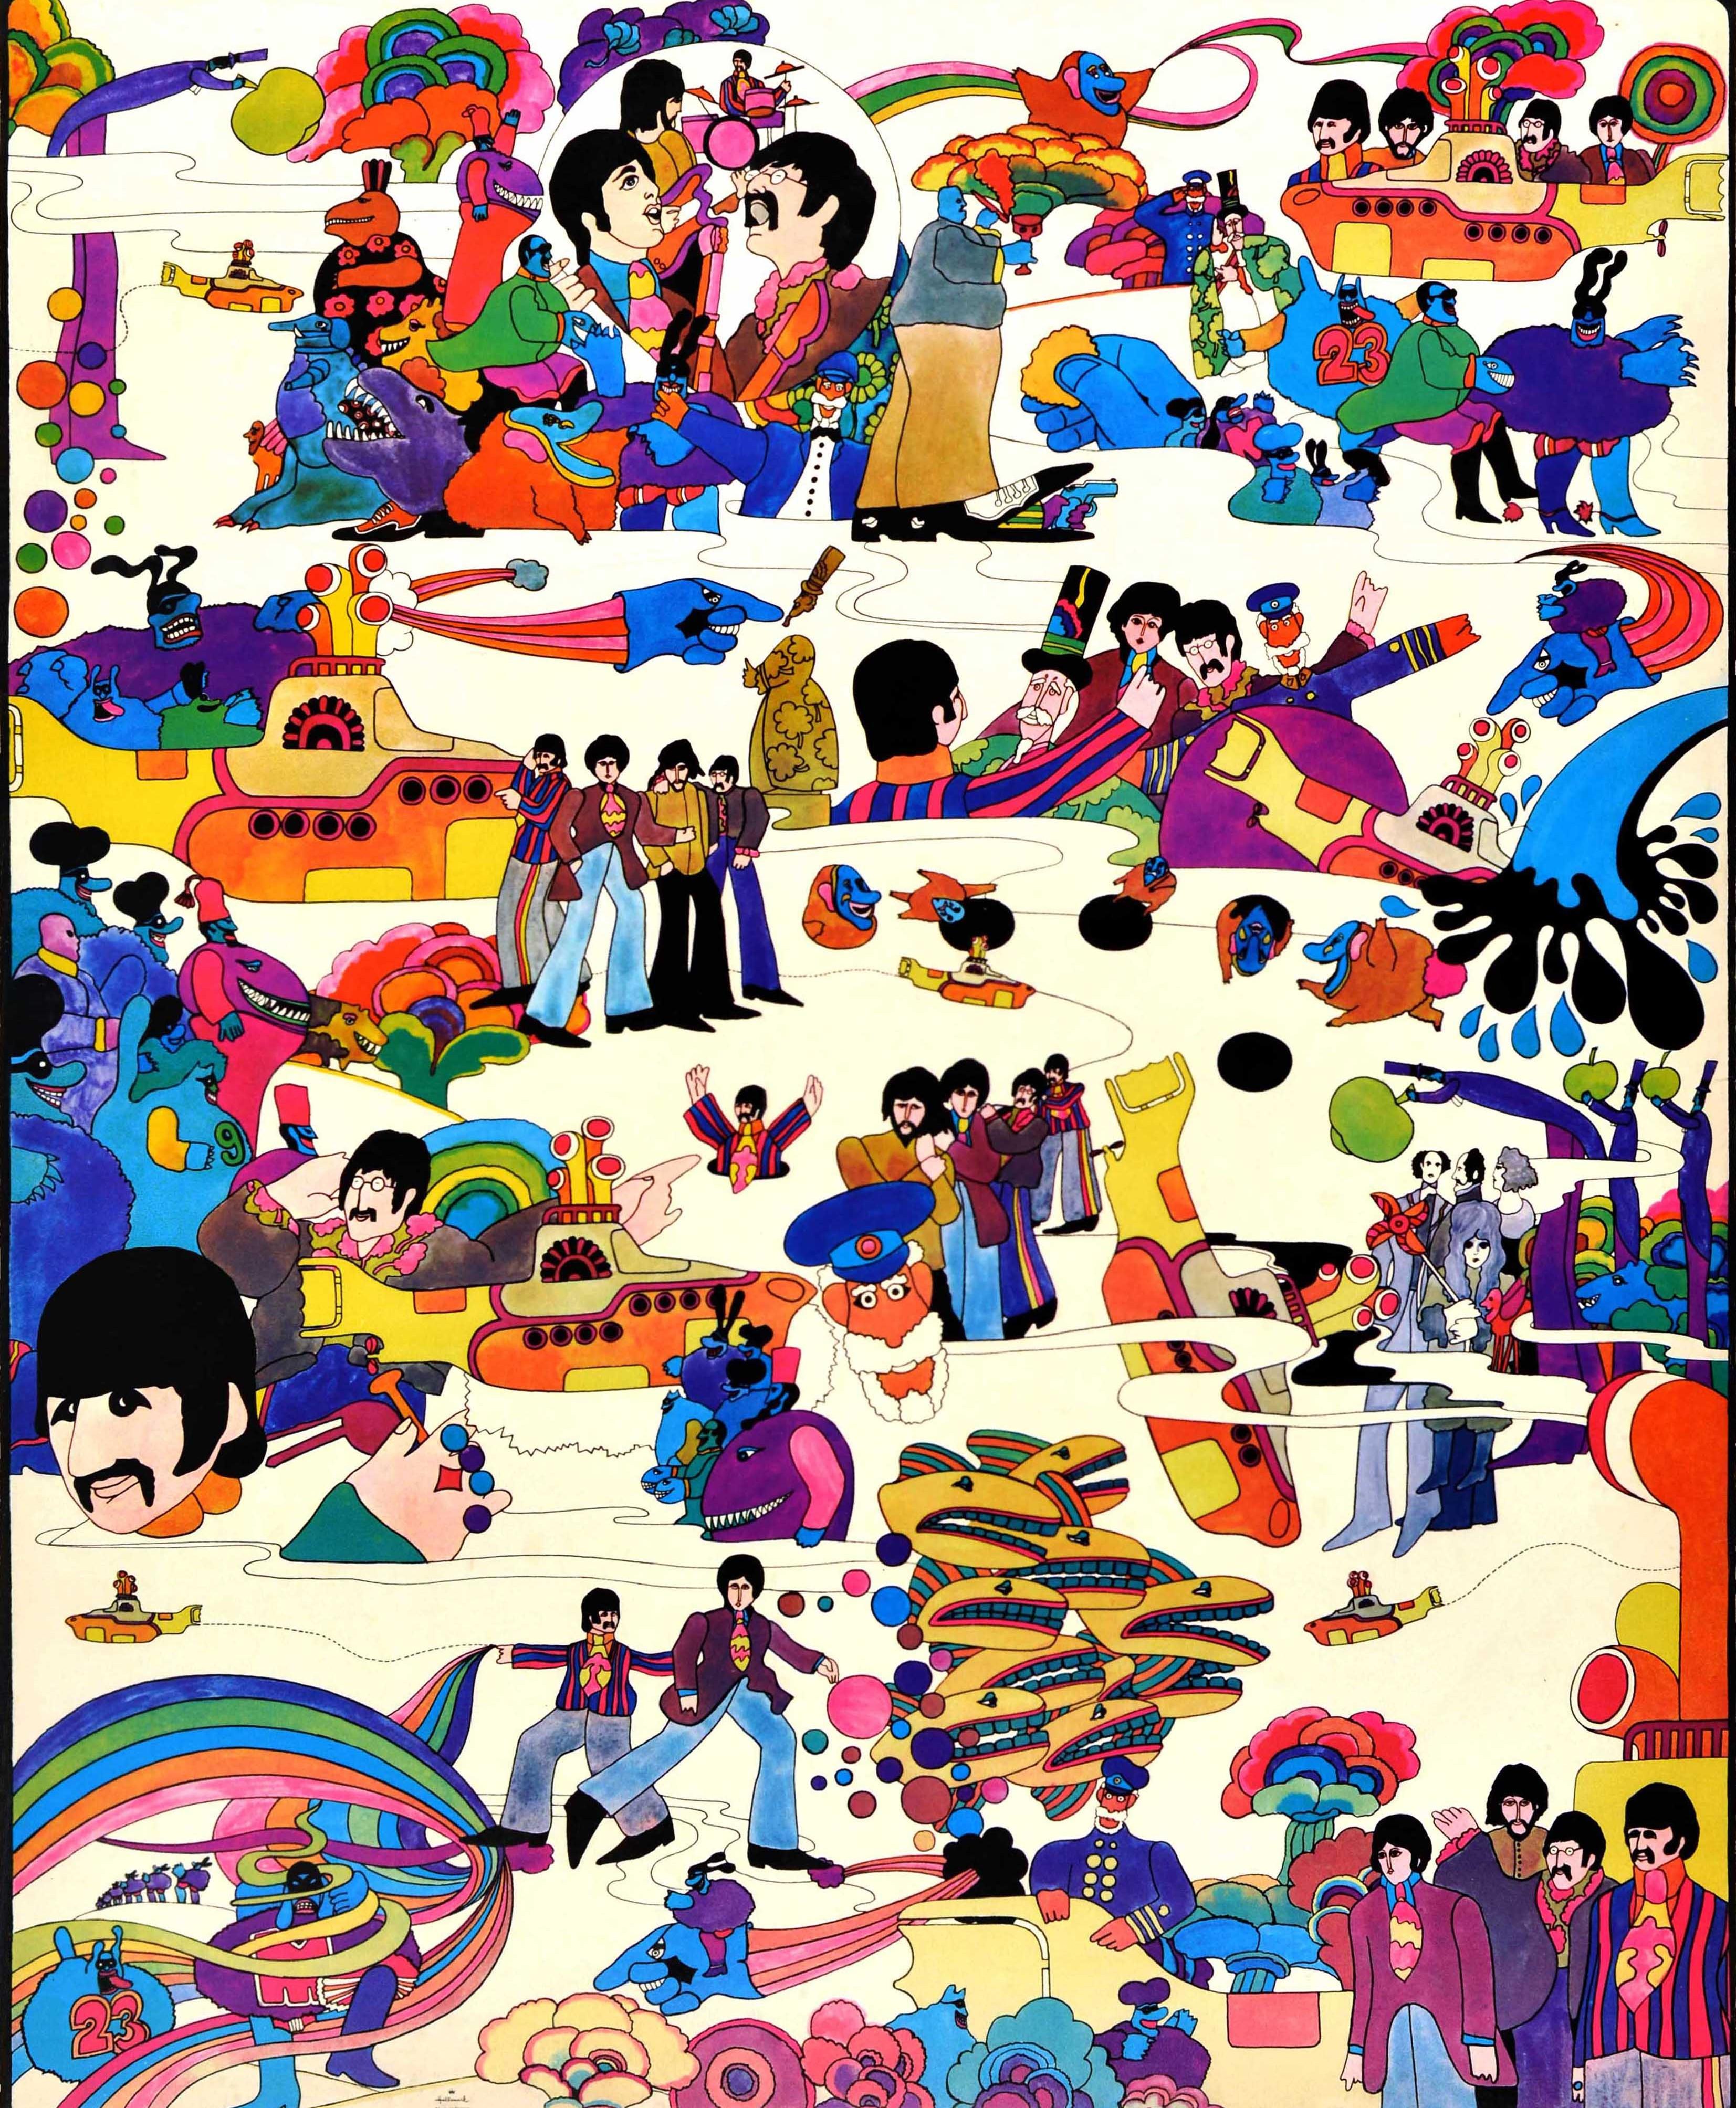 Original-Musikfilmplakat von Hallmark für den Animationsfilm Yellow Submarine mit der Sgt. Pepper's Lonely Hearts Club Band, der auf einem Song von John Lennon und Paul McCartney basiert und die Musik der Beatles (John Lennon, Paul McCartney, George